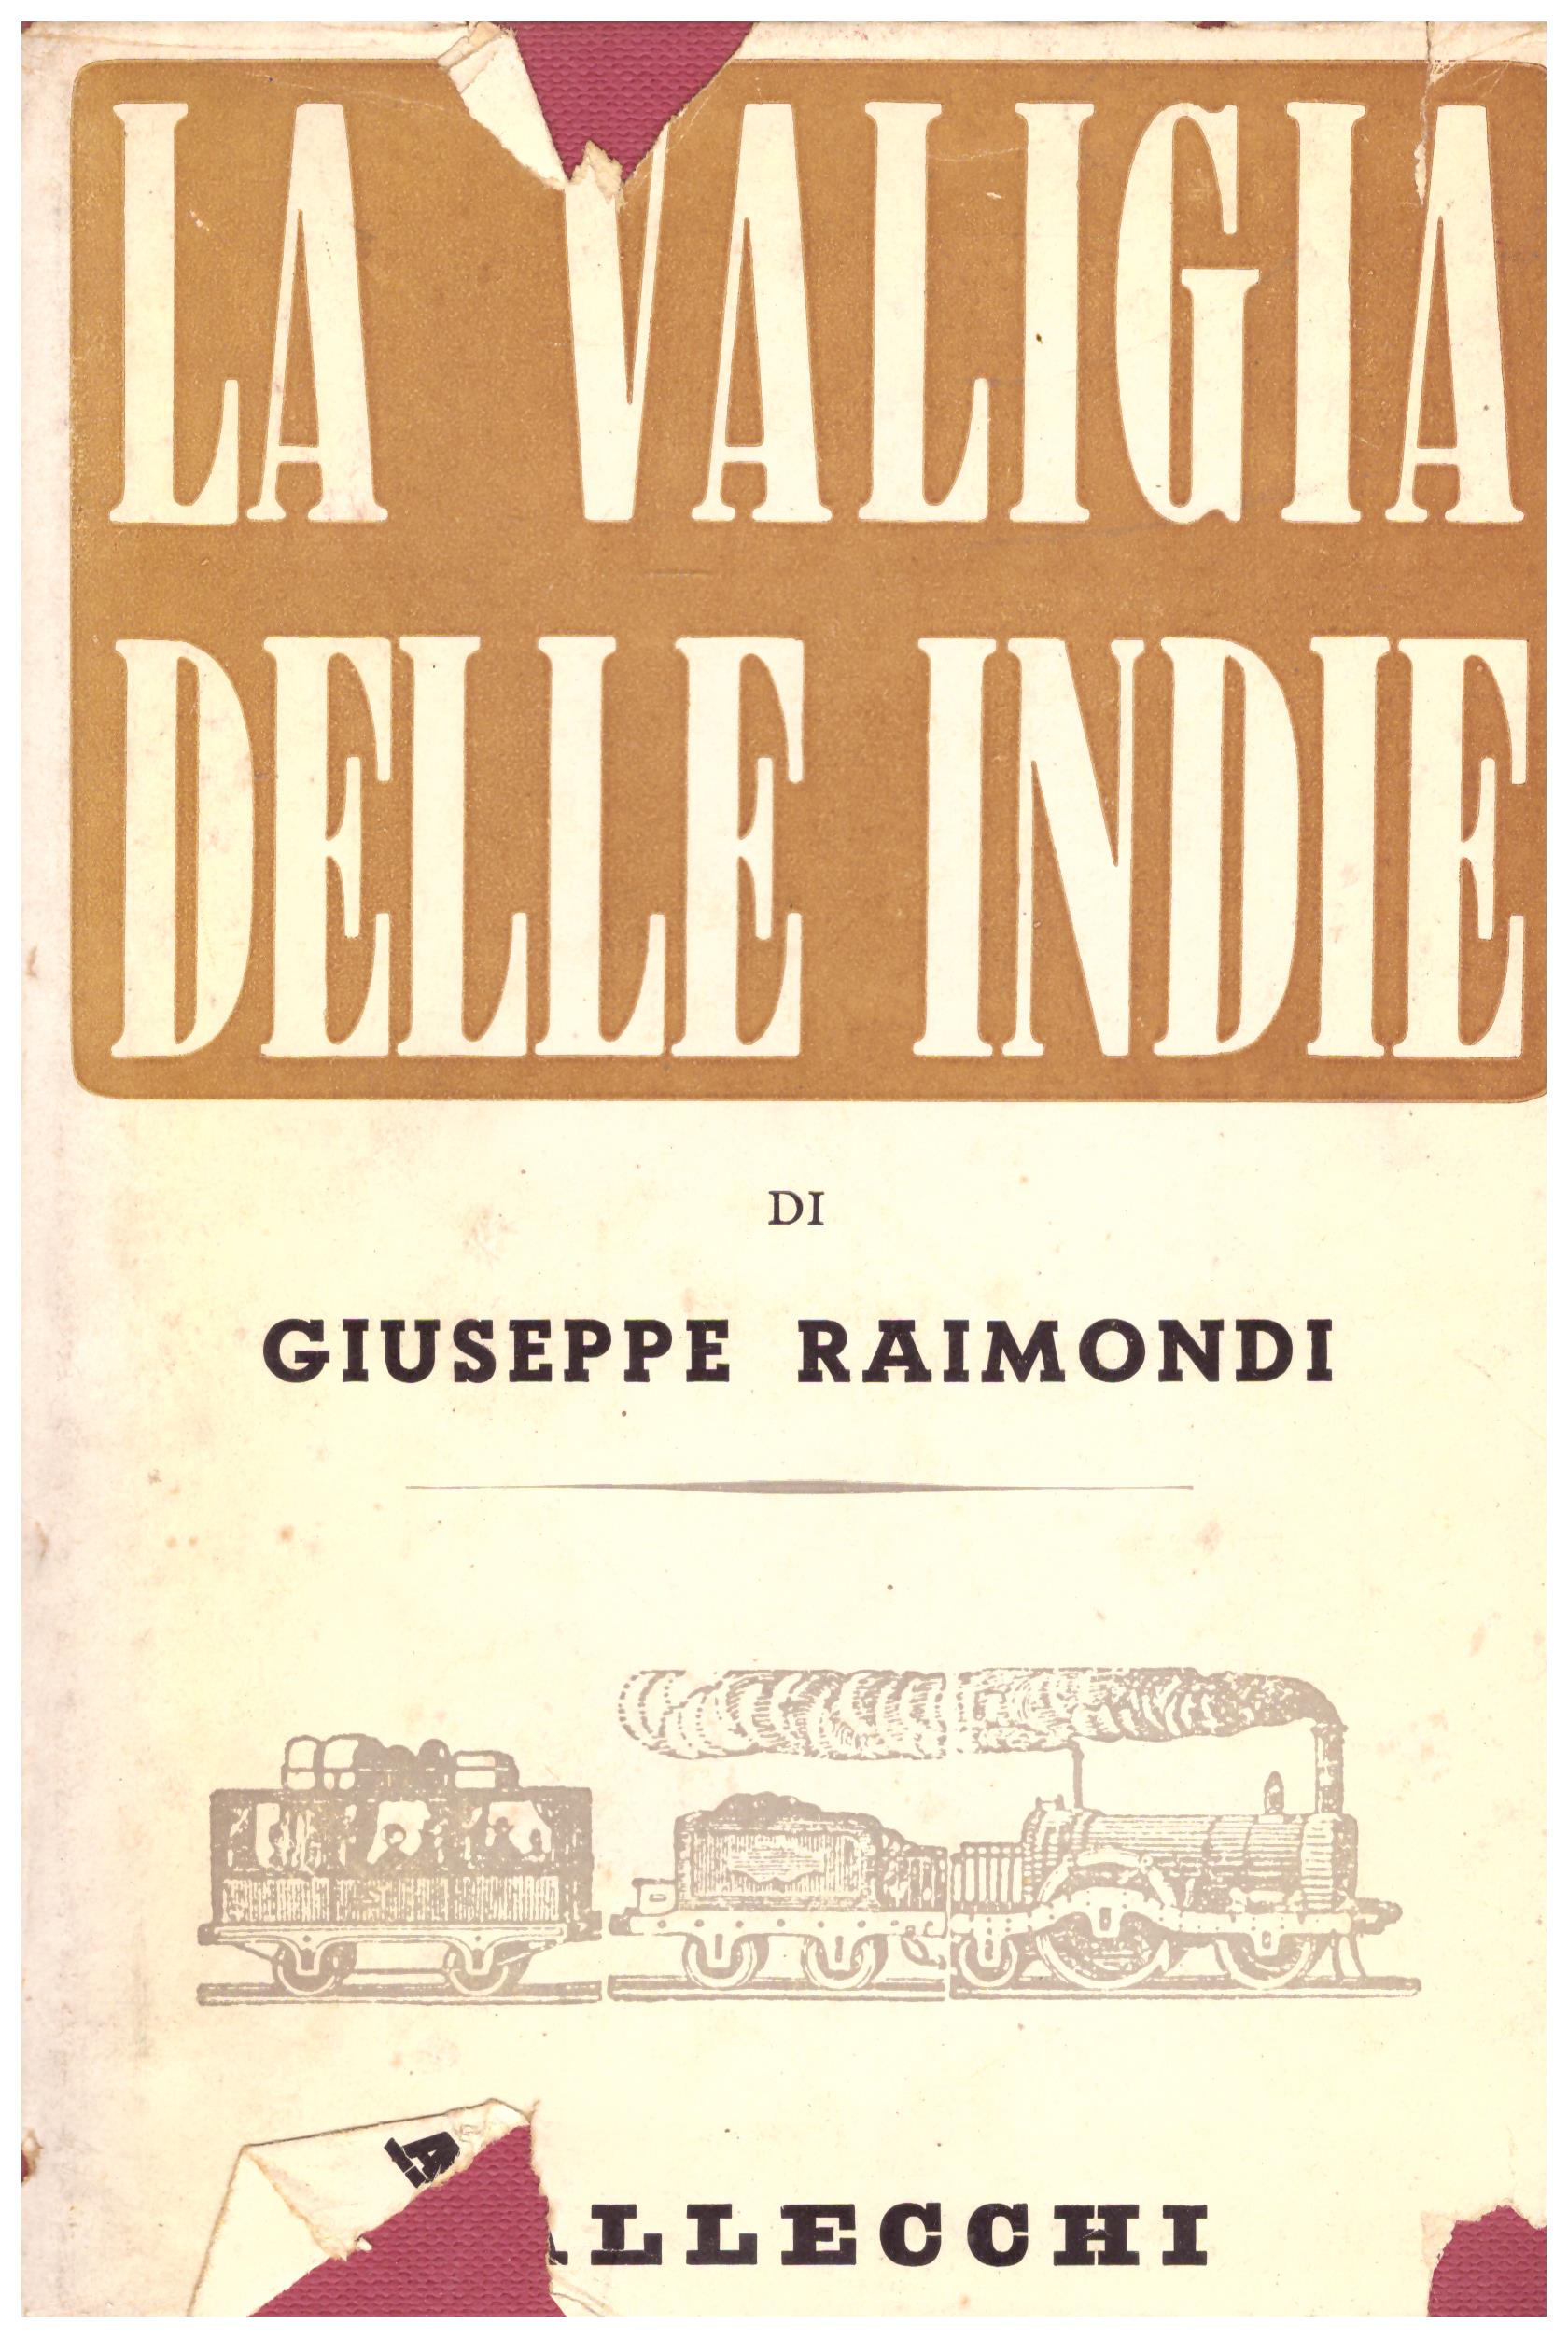 Titolo: La valigia delle Indie Autore: Giuseppe Raimondi Editore: Vallecchi, 1955